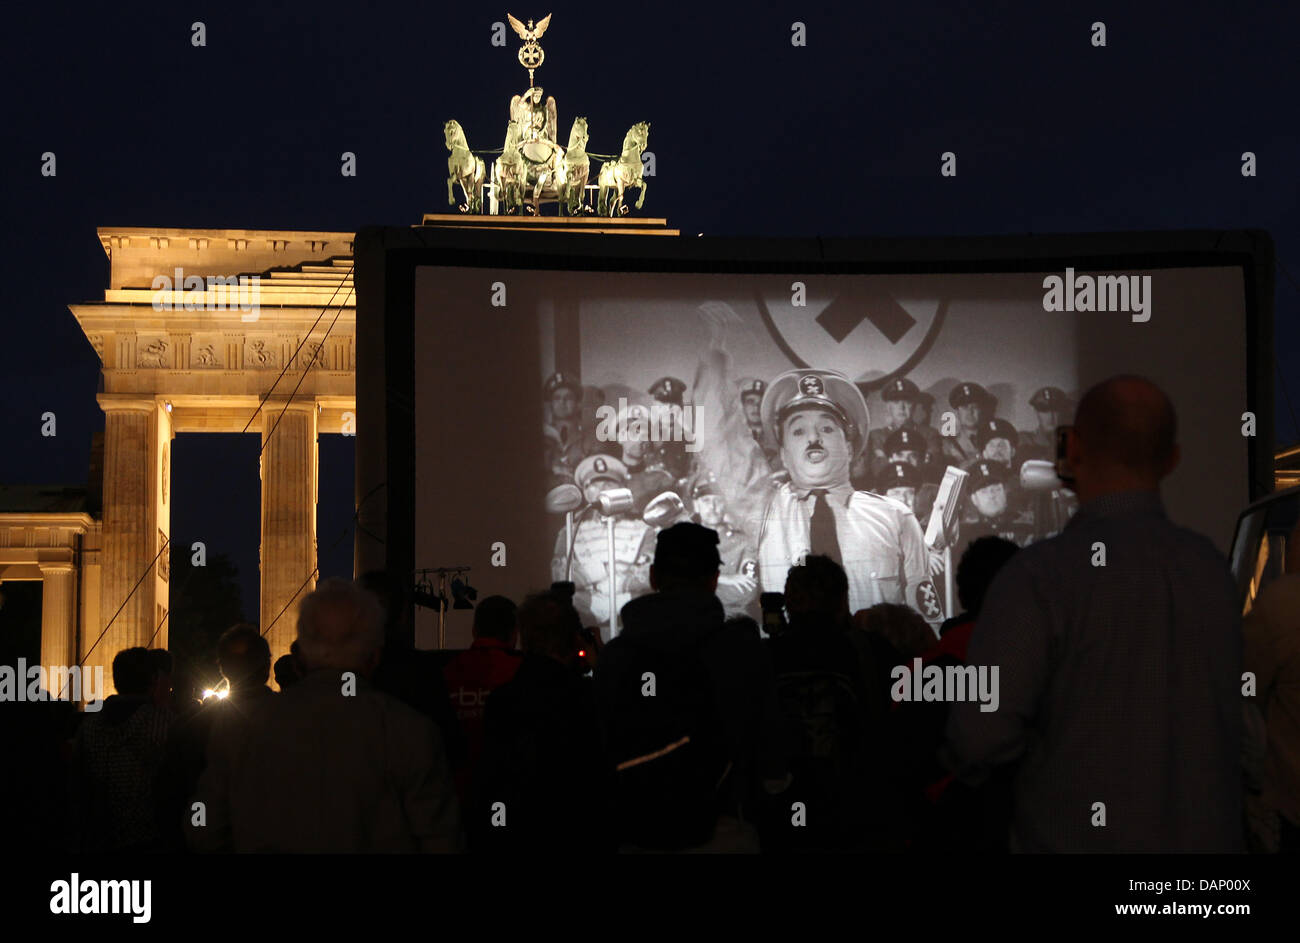 Menschen besuchen dem Screening von Chaplins "Den großen Diktator" am Brandenburger Tor in Berlin, Deutschland, 15. Juni 2011. Das Stummfilm-Festival 'Chaplin komplette' eröffnet mit dem Screening auf das Wahrzeichen der Stadt. Foto: Wolfgang Kumm Stockfoto